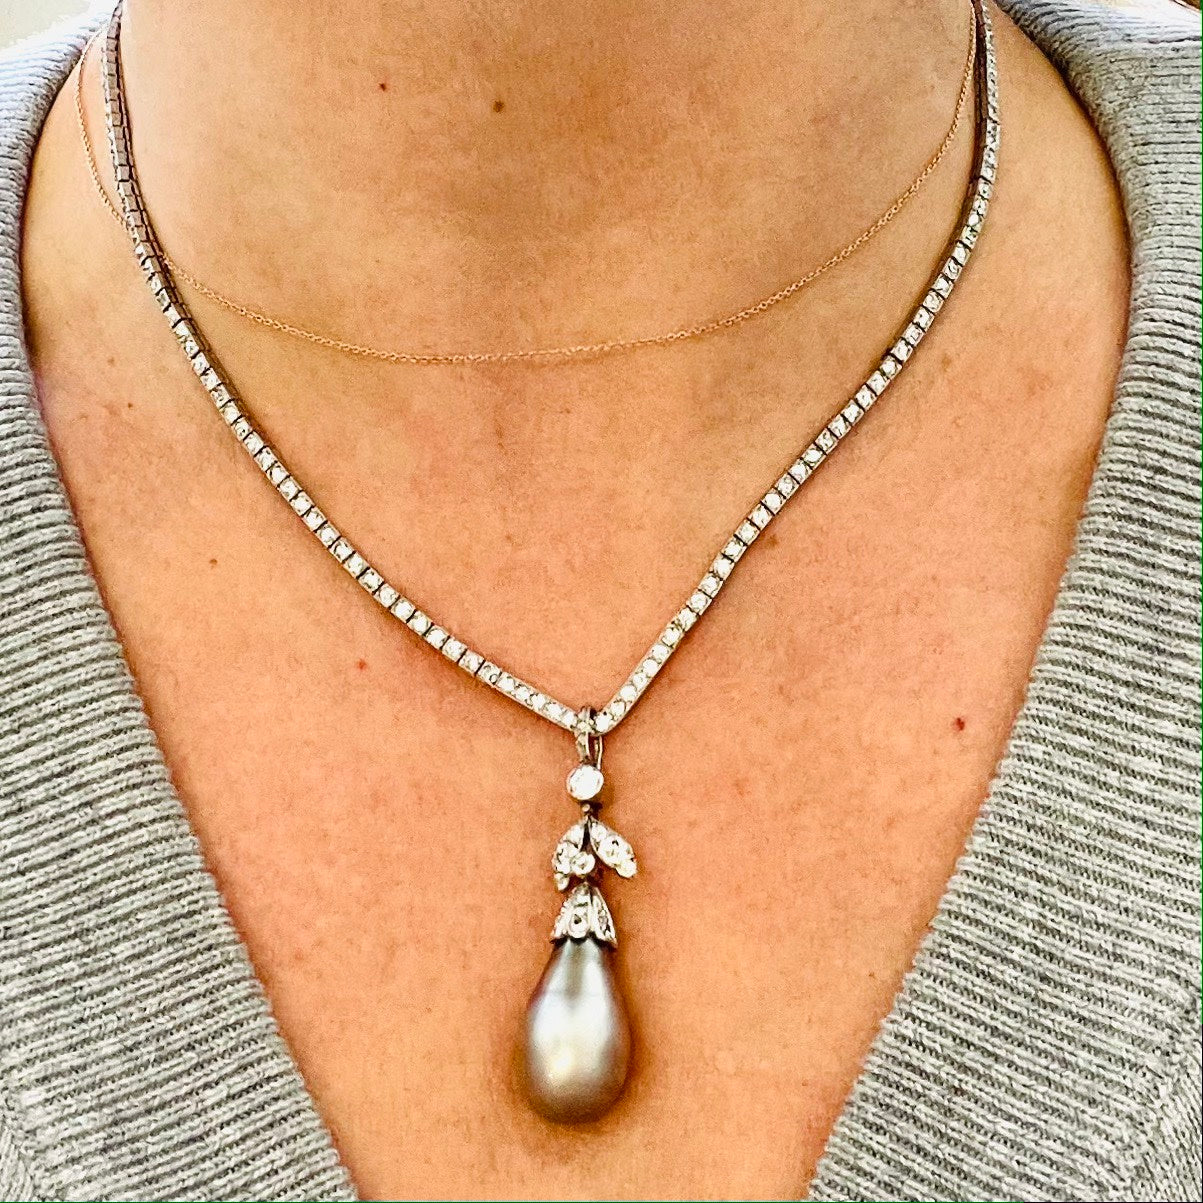 Cartier Art Nouveau Platinum Diamond & Natural Pearl Necklace worn on neck